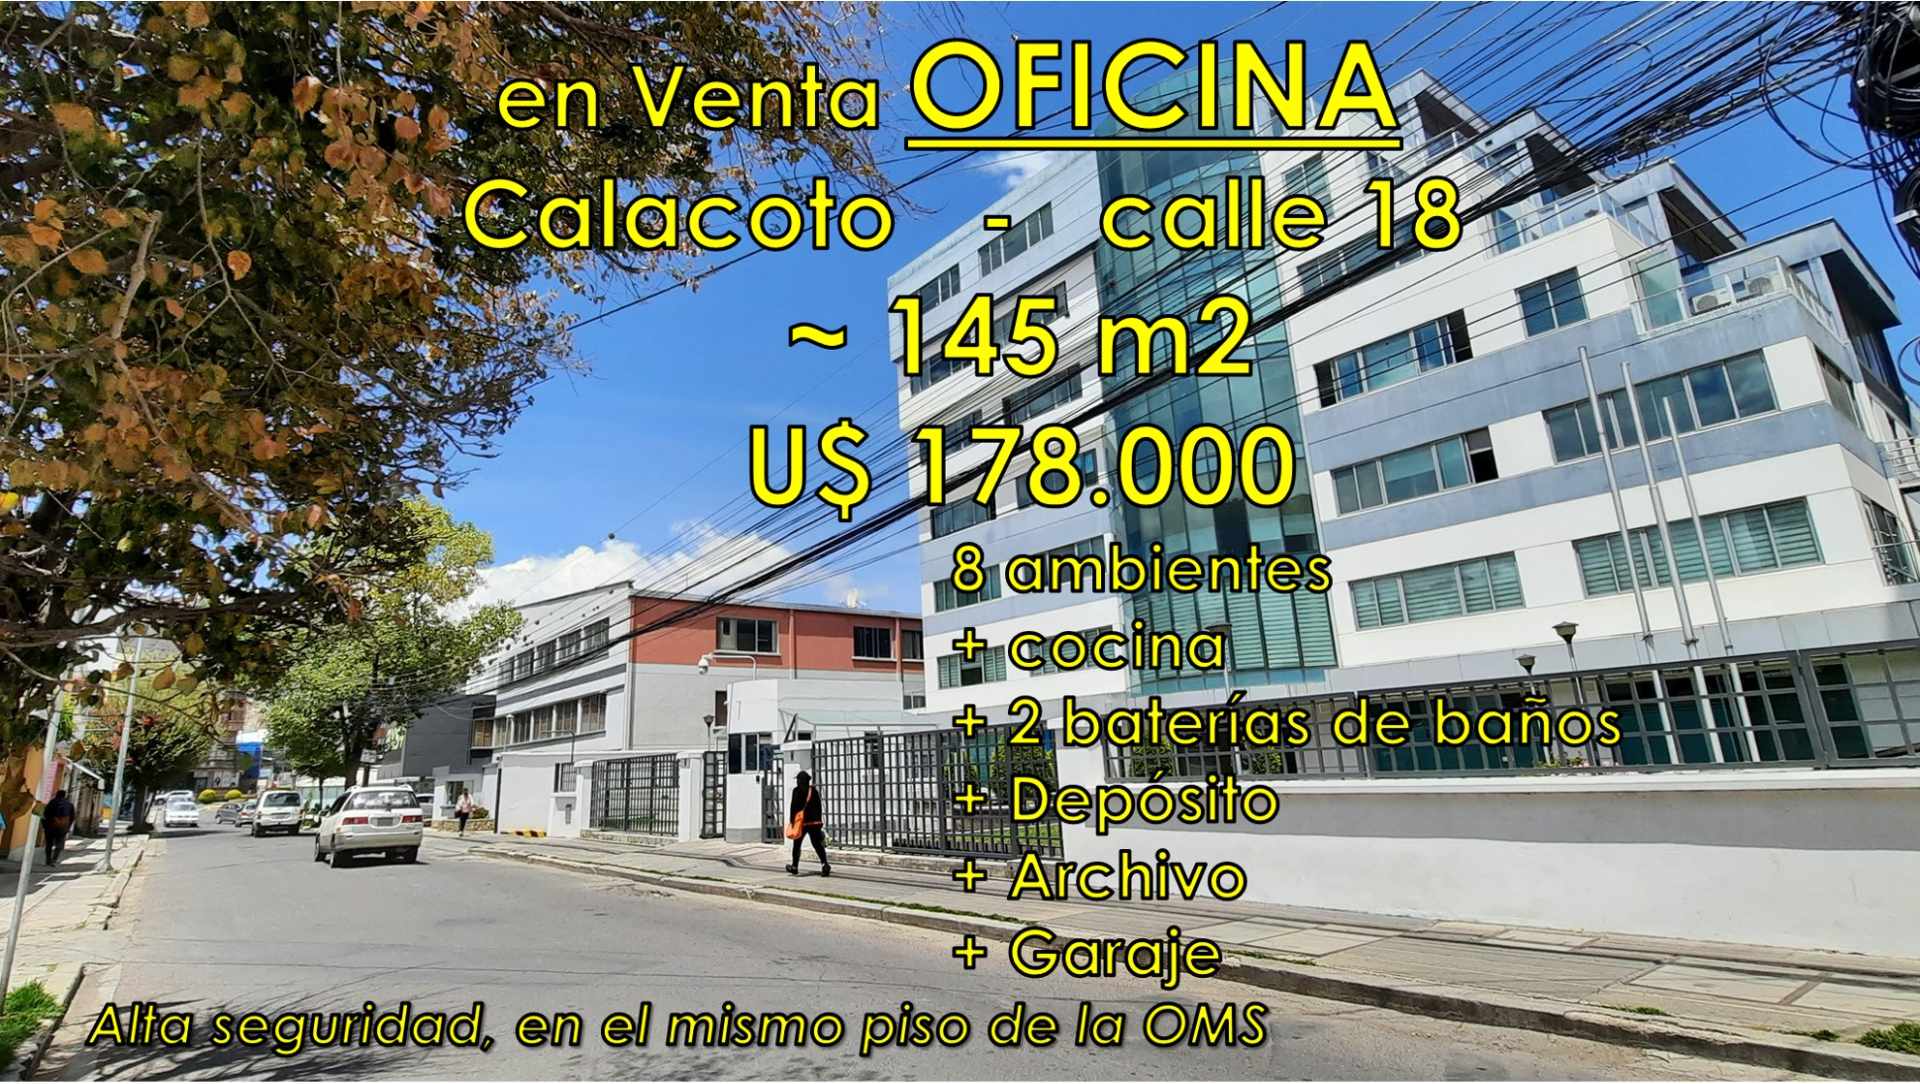 Oficina en Venta Calacoto Calle 18 entre Av. Sanchez Bustamante y Av. Julio C. Patiño Edif. 